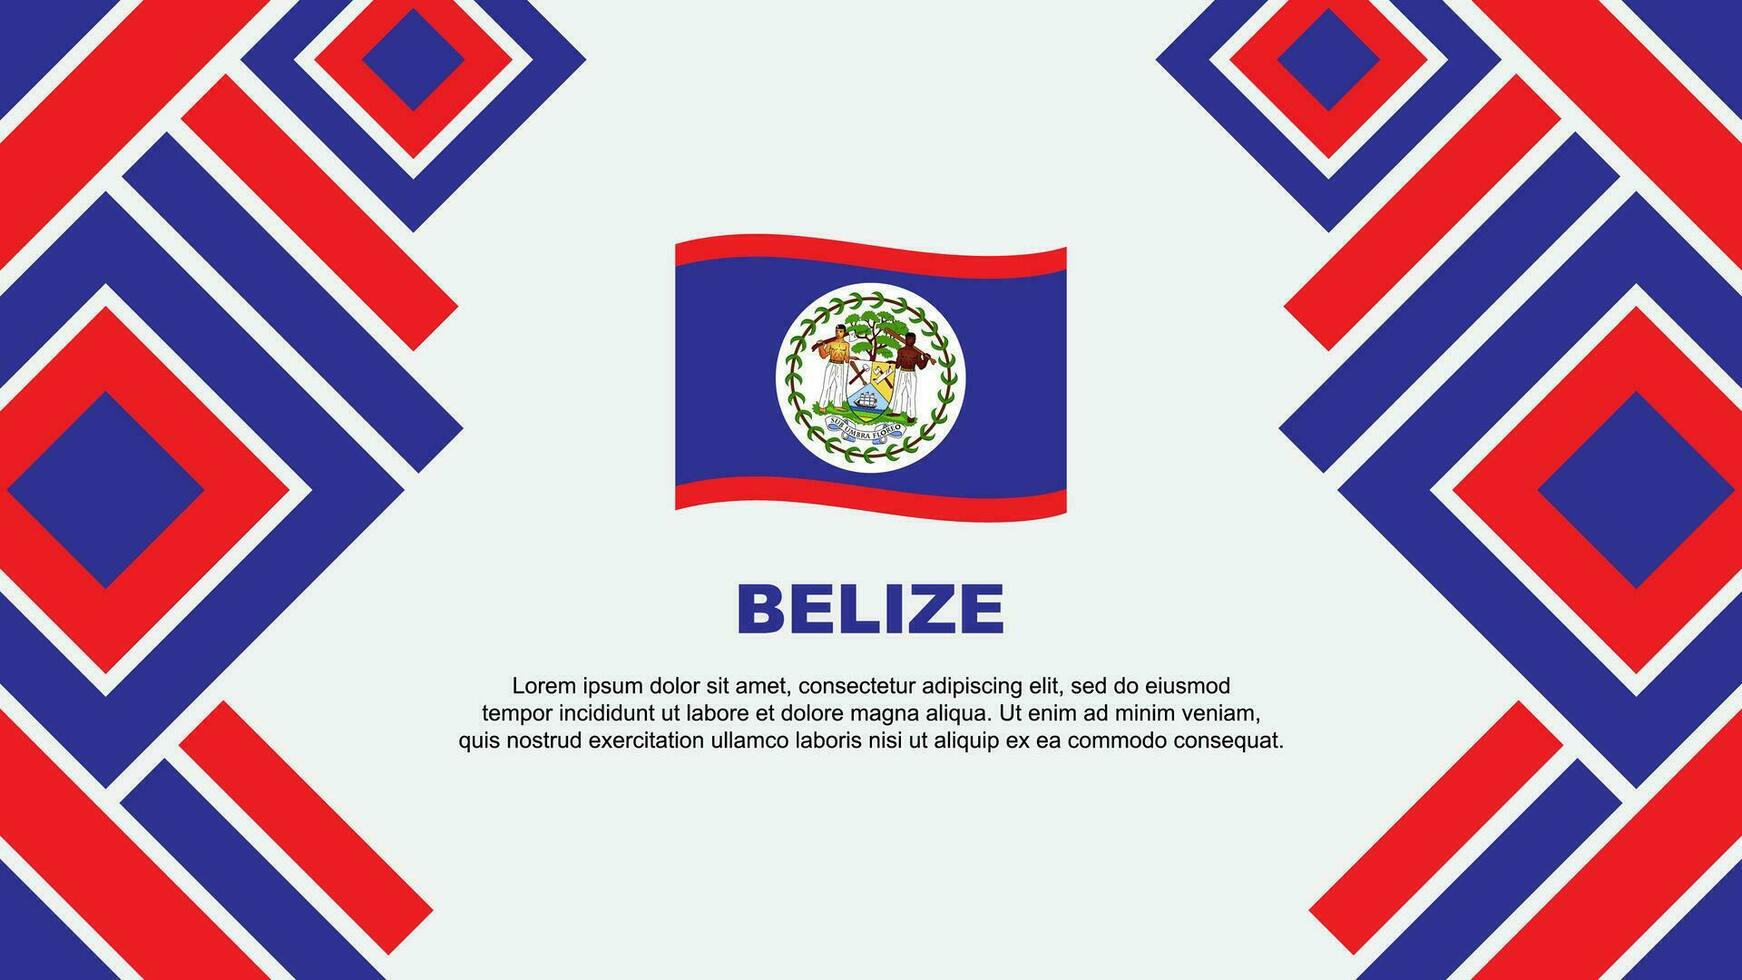 Belize Flag Abstract Background Design Template. Belize Independence Day Banner Wallpaper Vector Illustration. Belize